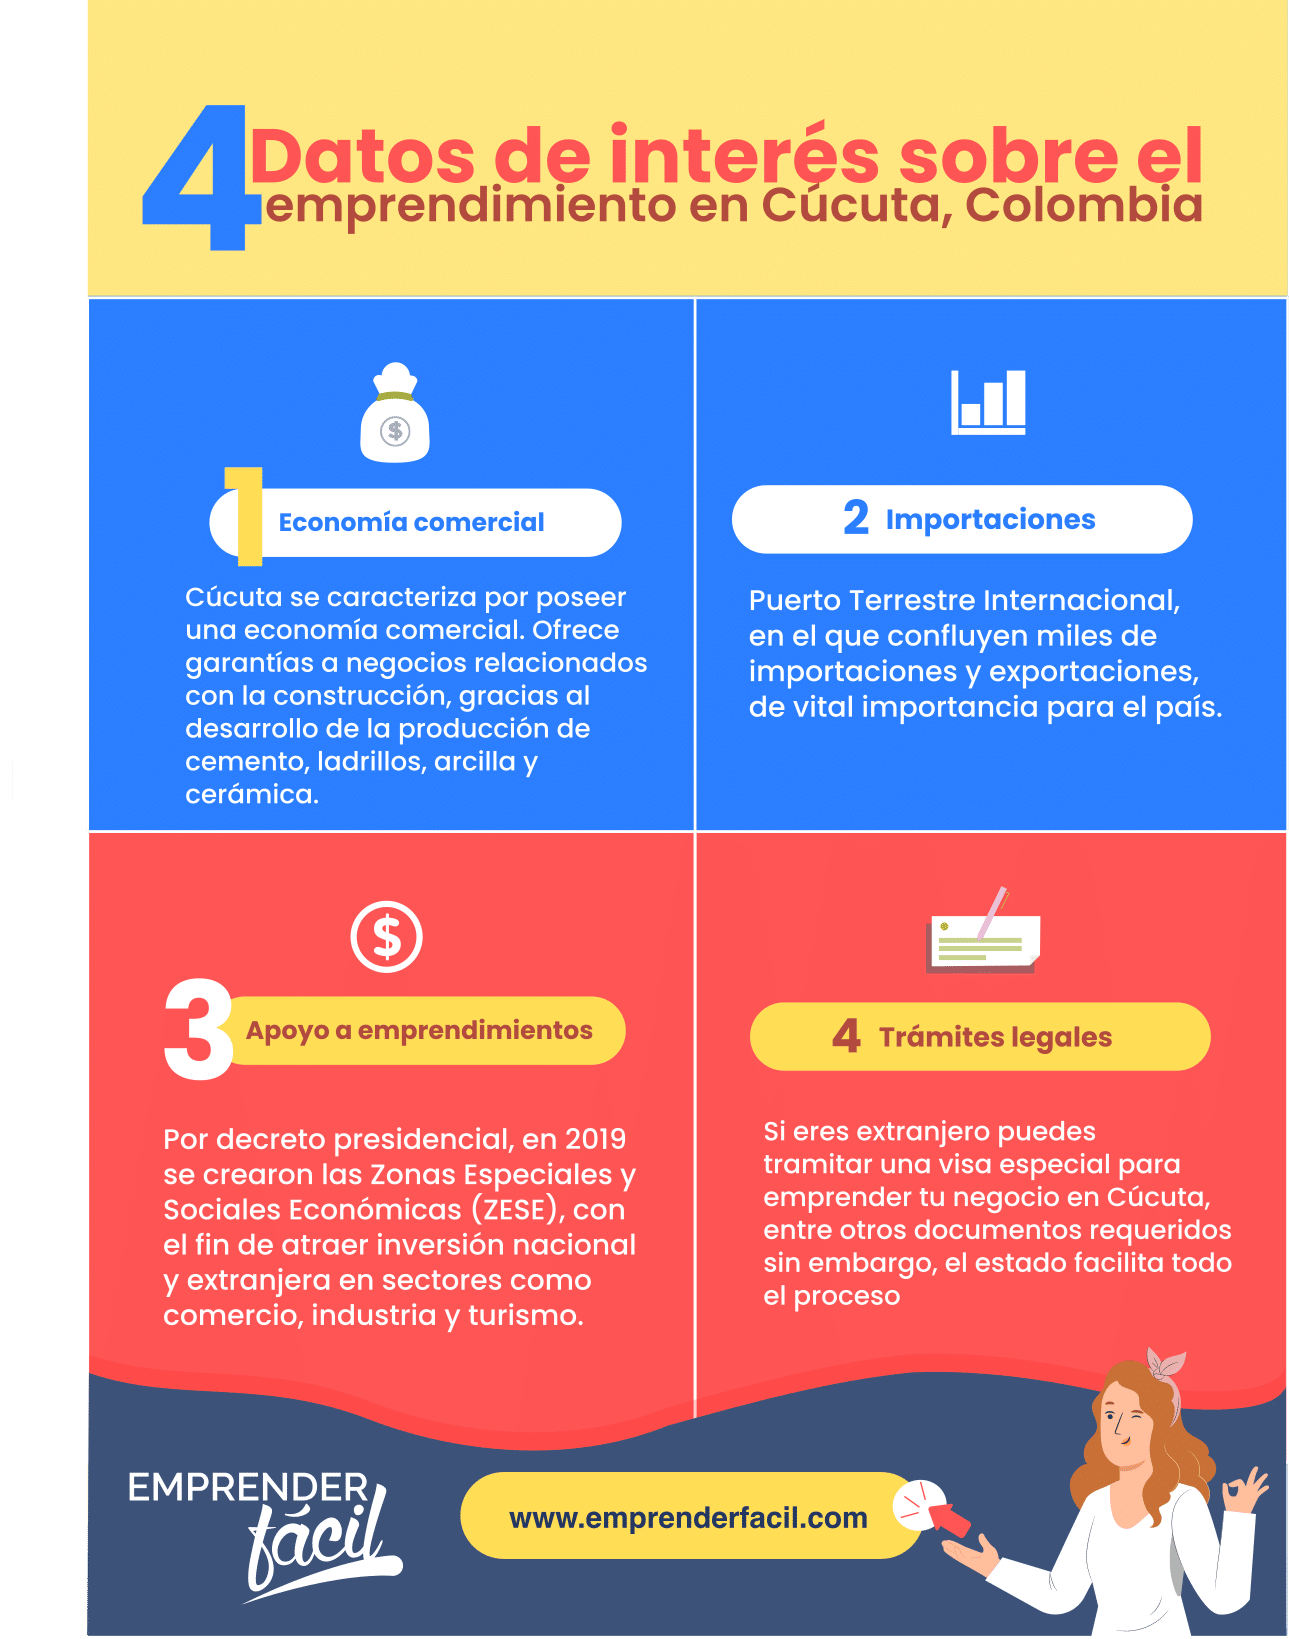 Datos relevantes sobre la economía y el emprendimiento en Cúcuta.